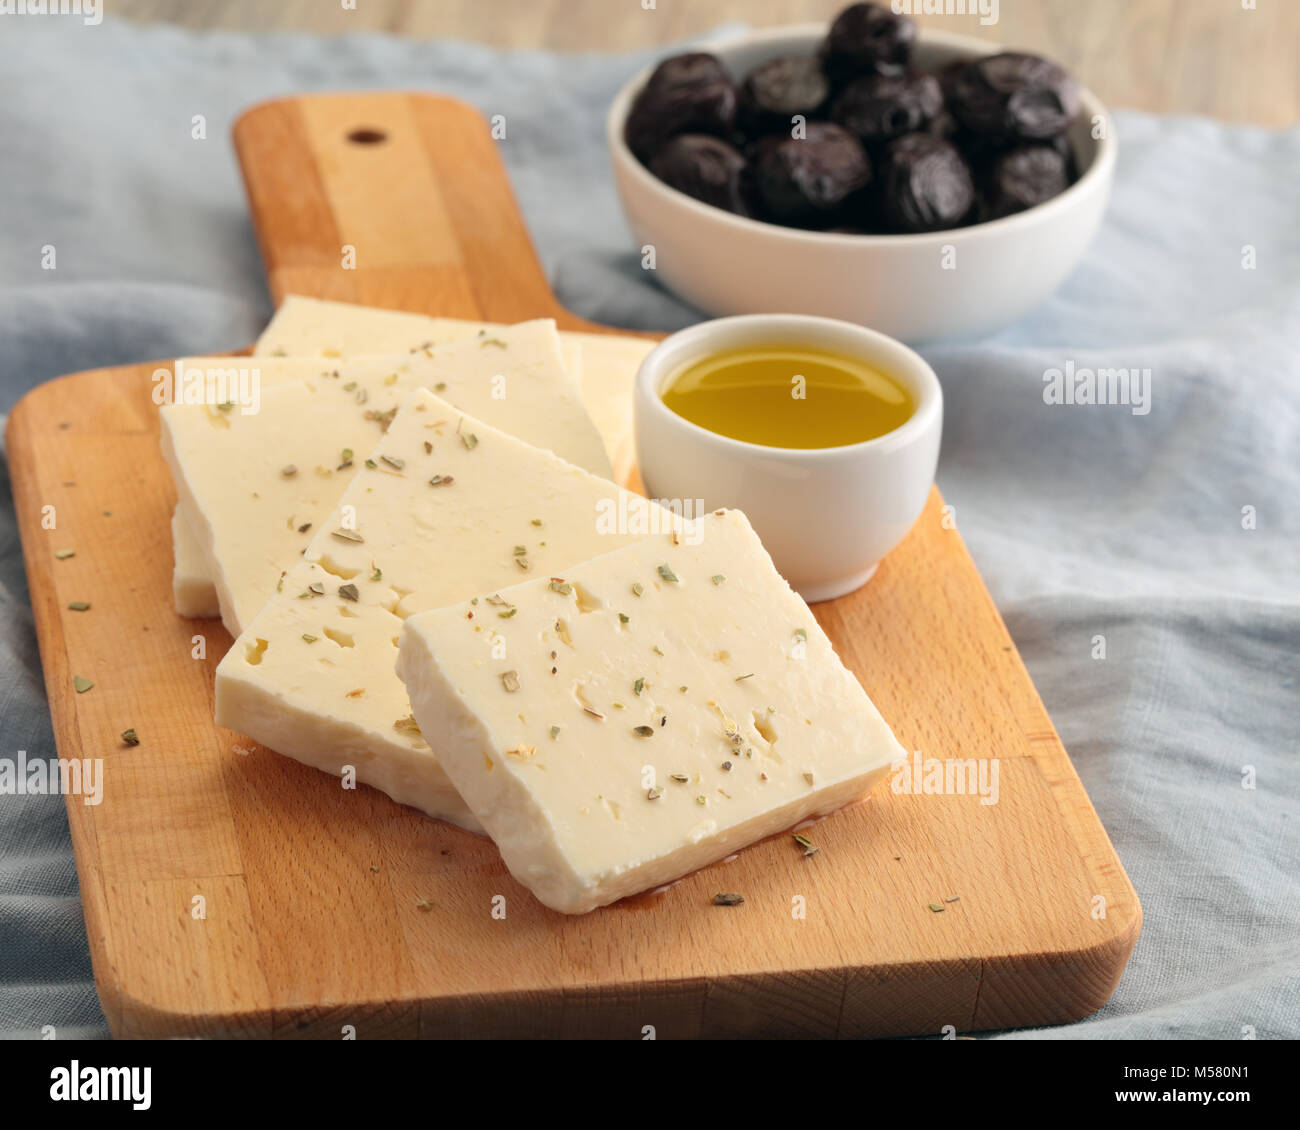 Tranches de fromage feta, olives noires et huile d'olive Banque D'Images